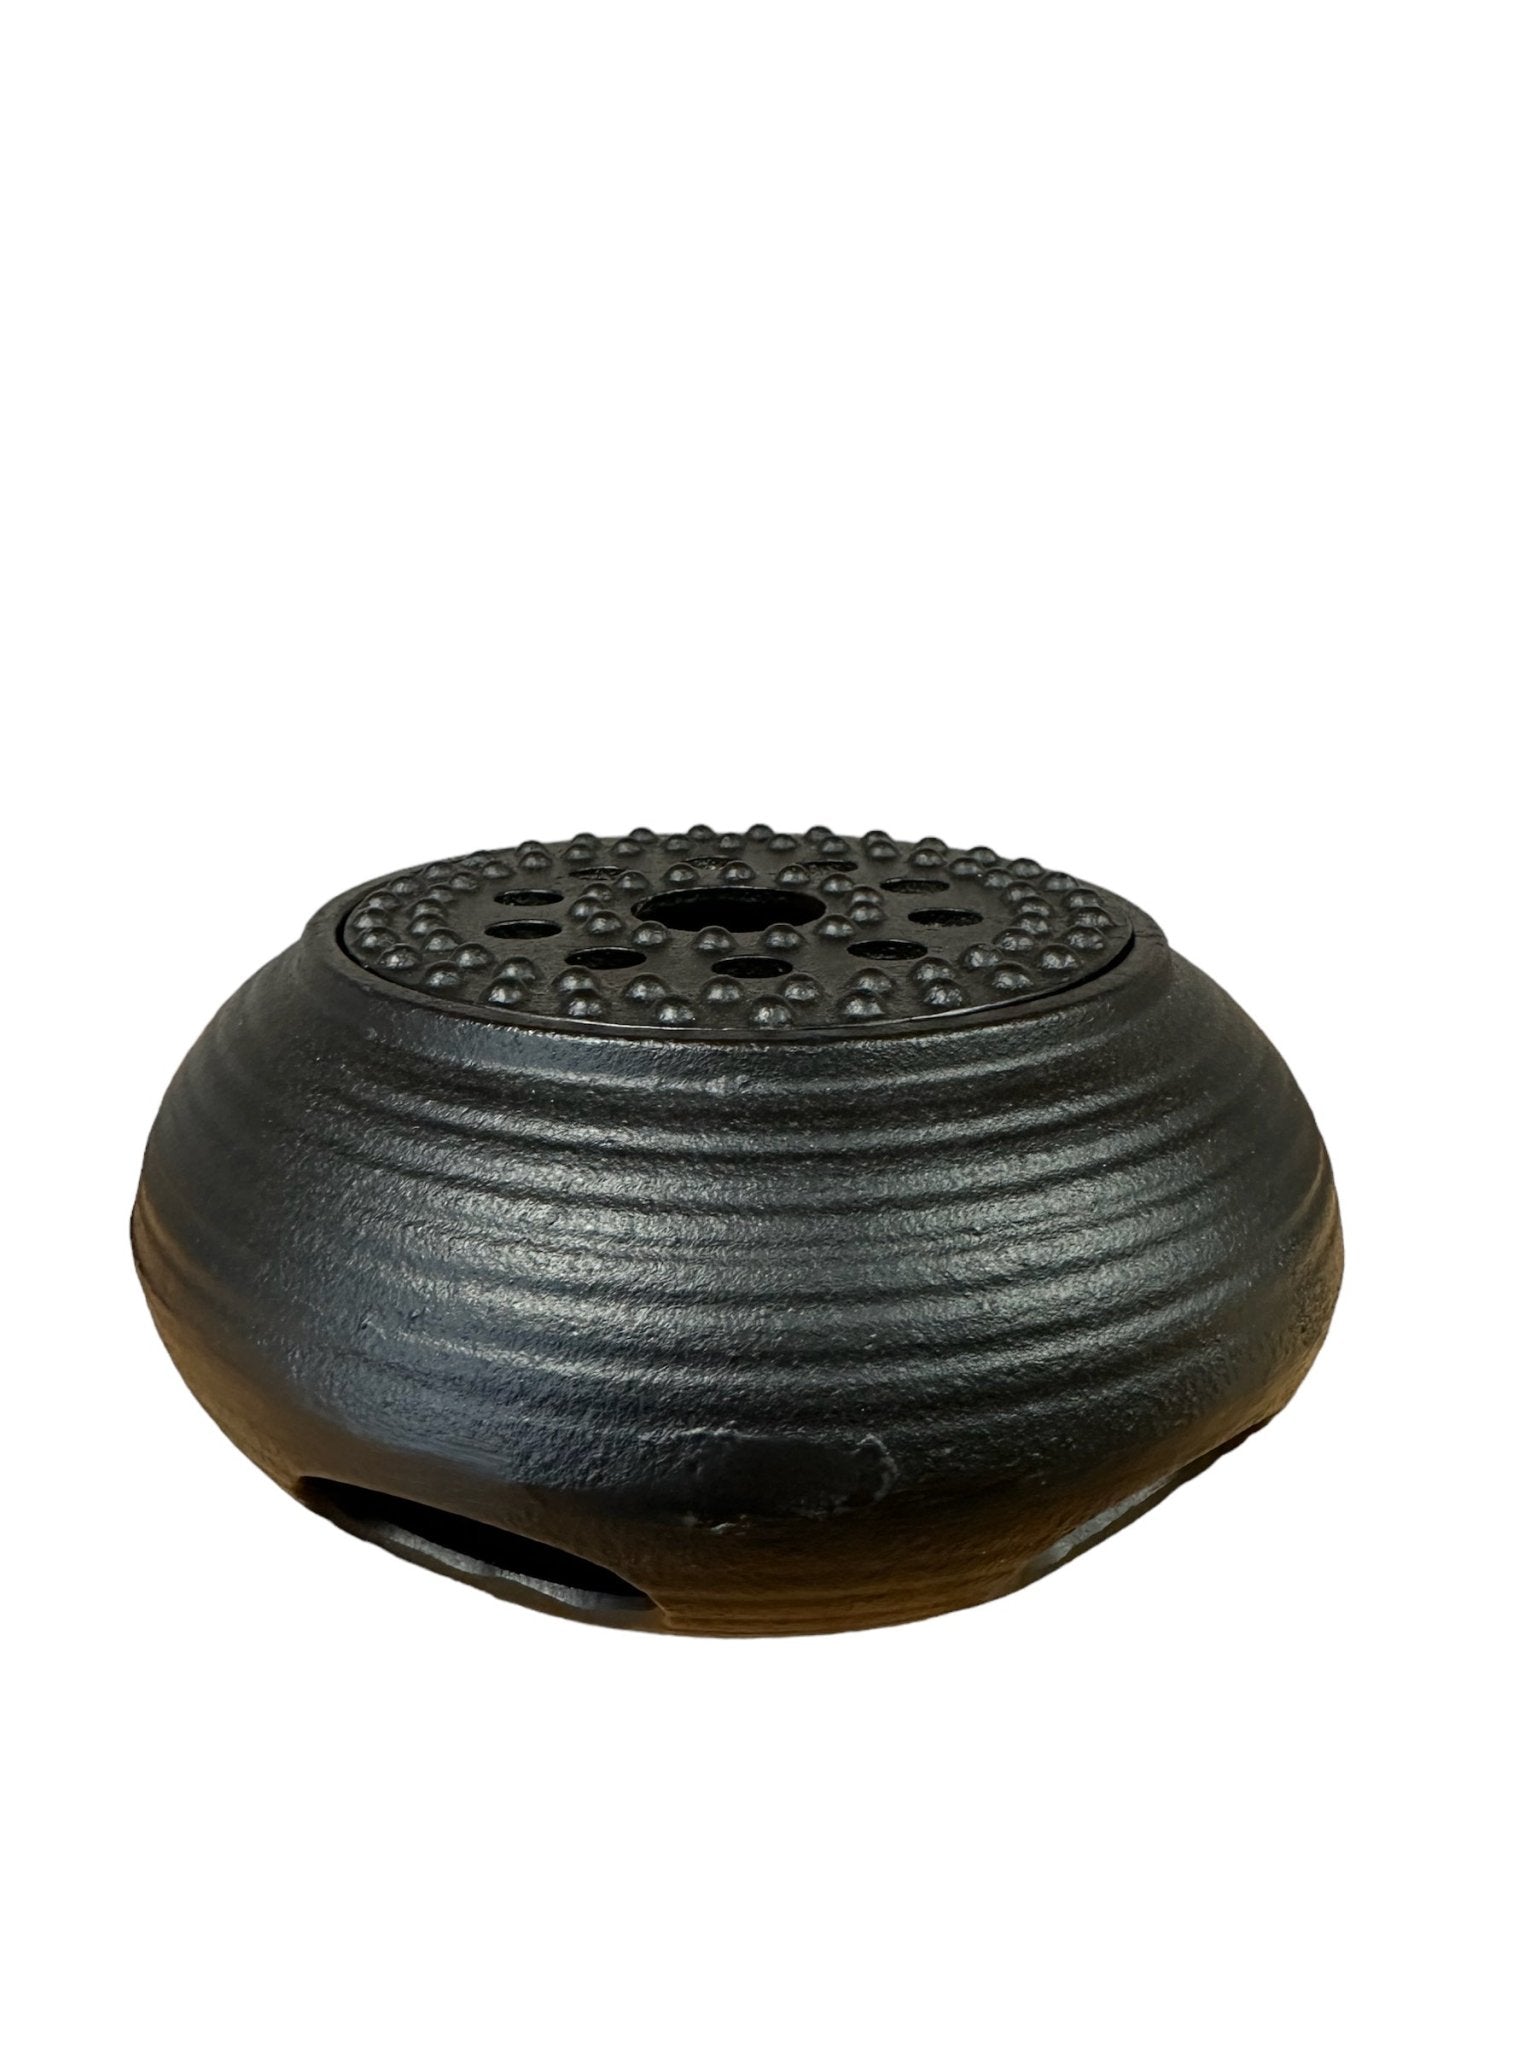 Vintage Black Cast Iron Tea Pot Warmer - Steepologie